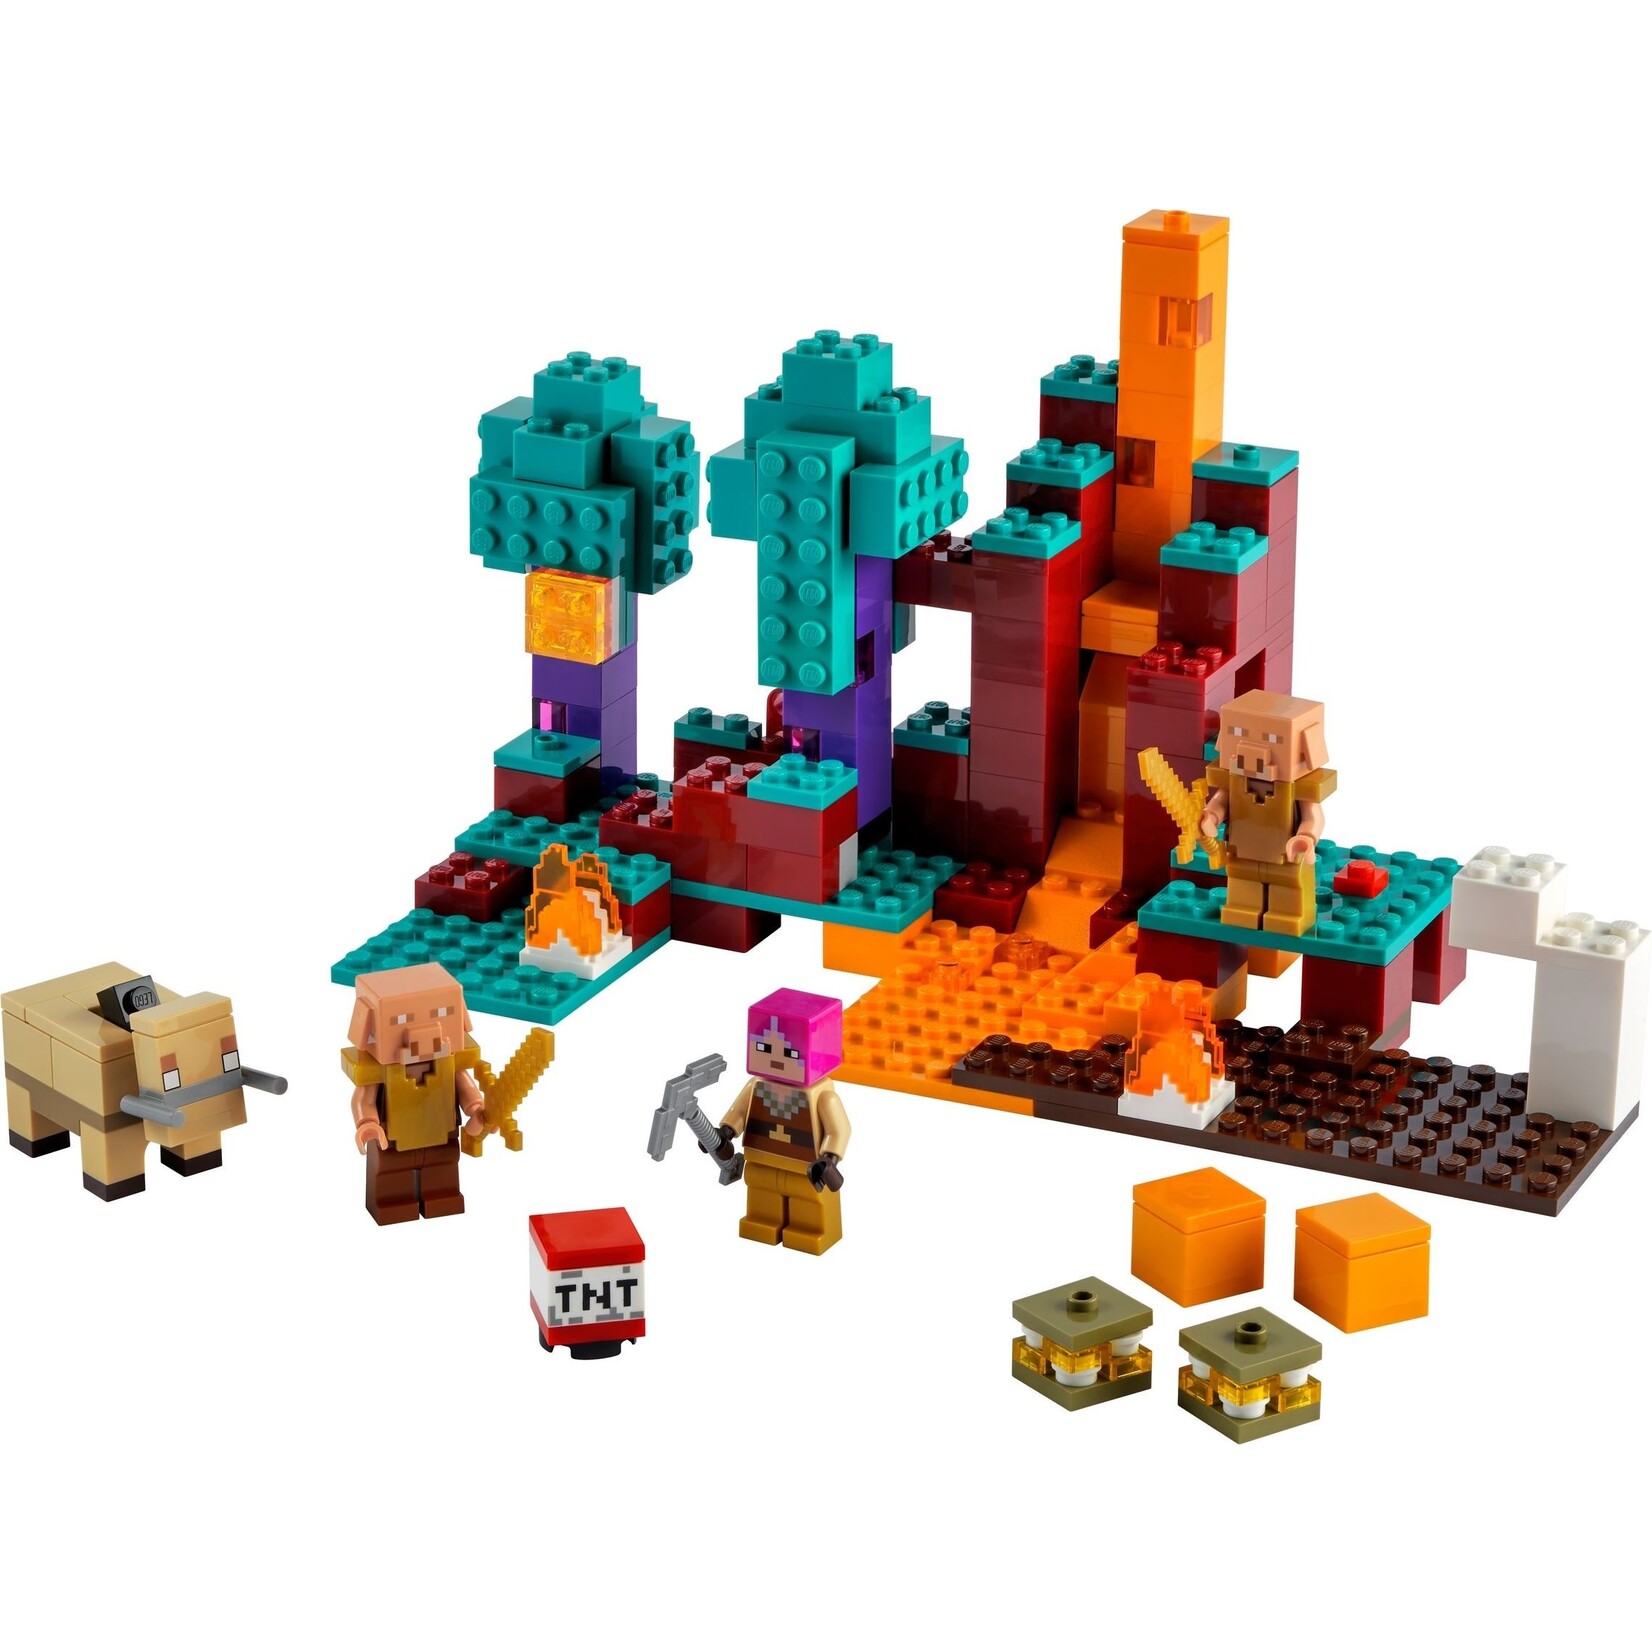 LEGO Het verwrongen bos - 21168